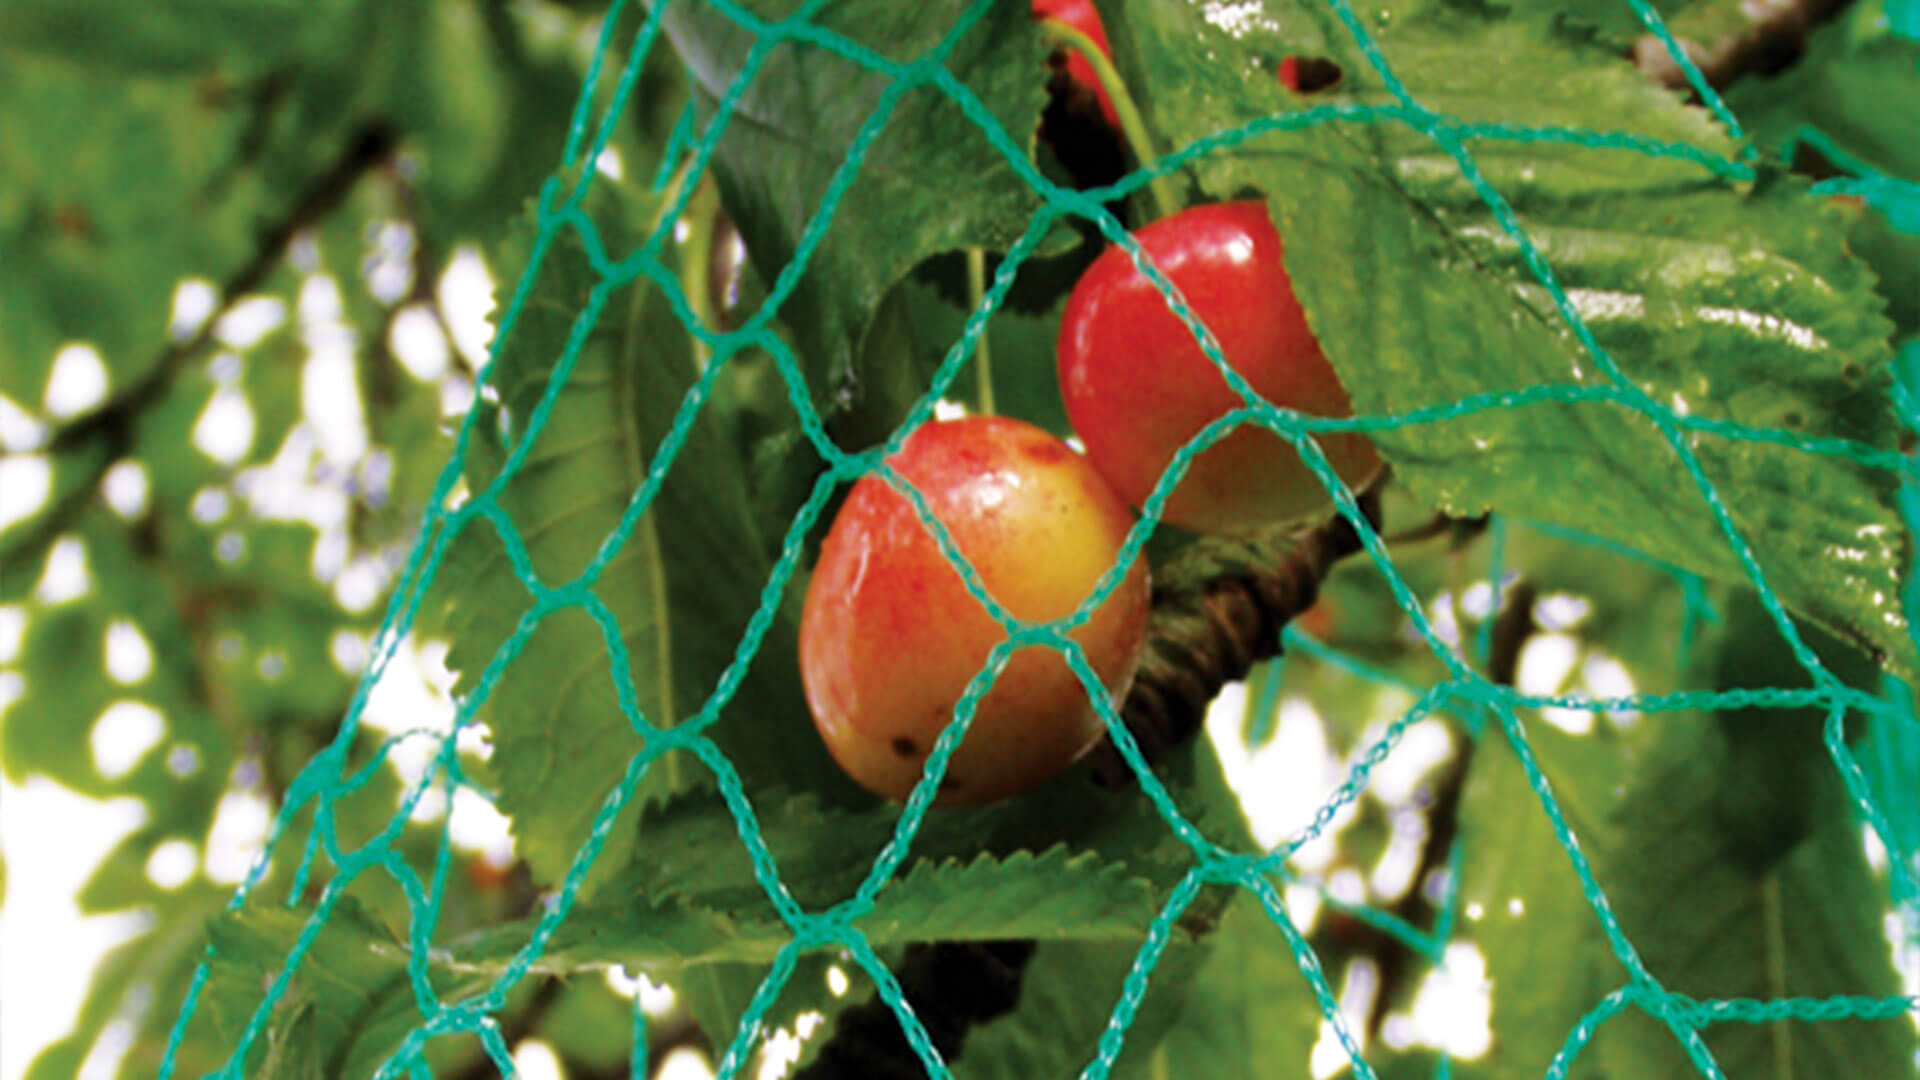 Redes anti-pajaros cultivos de frutes profesionales